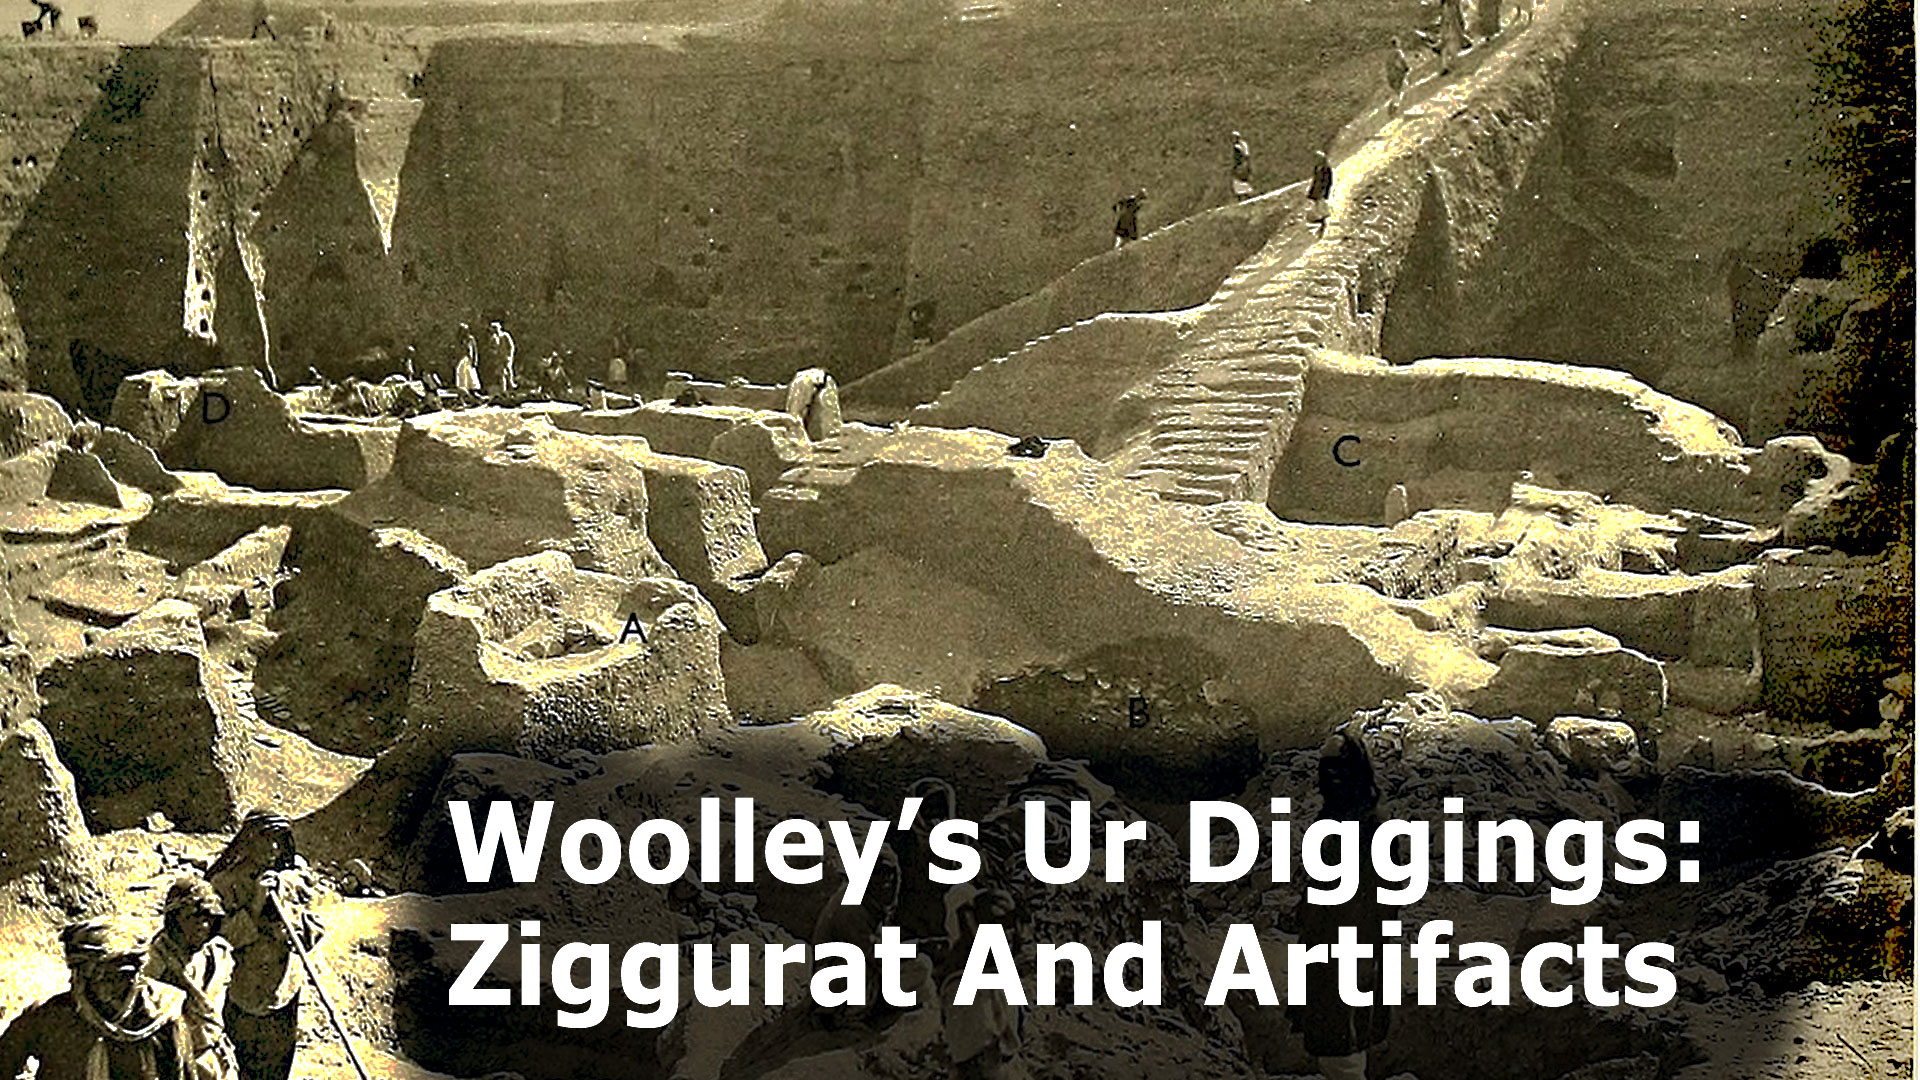 Wooley's Ur Diggings: Ziggurat and Artifacts